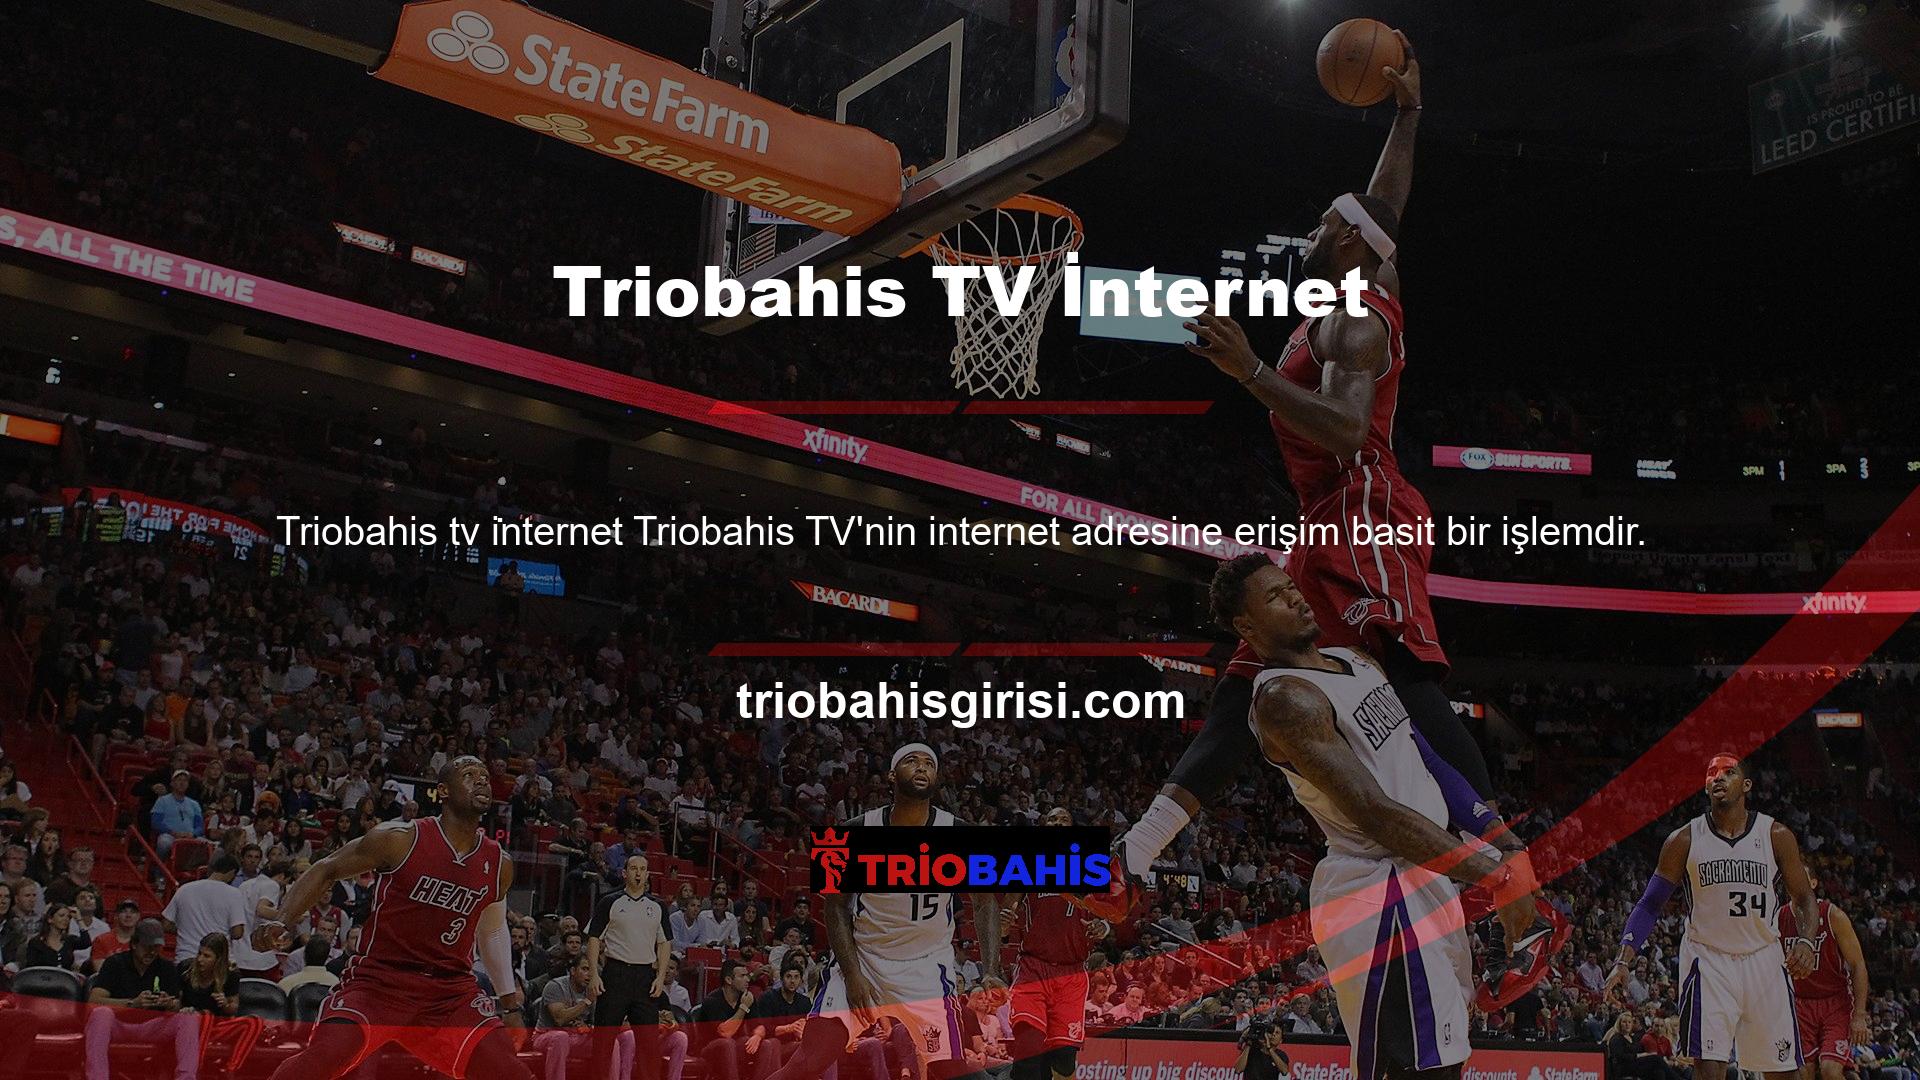 Başlamak için tarayıcınıza "Triobahis TV" yazmanız ve beliren ilk seçeneğe tıklamanız yeterlidir